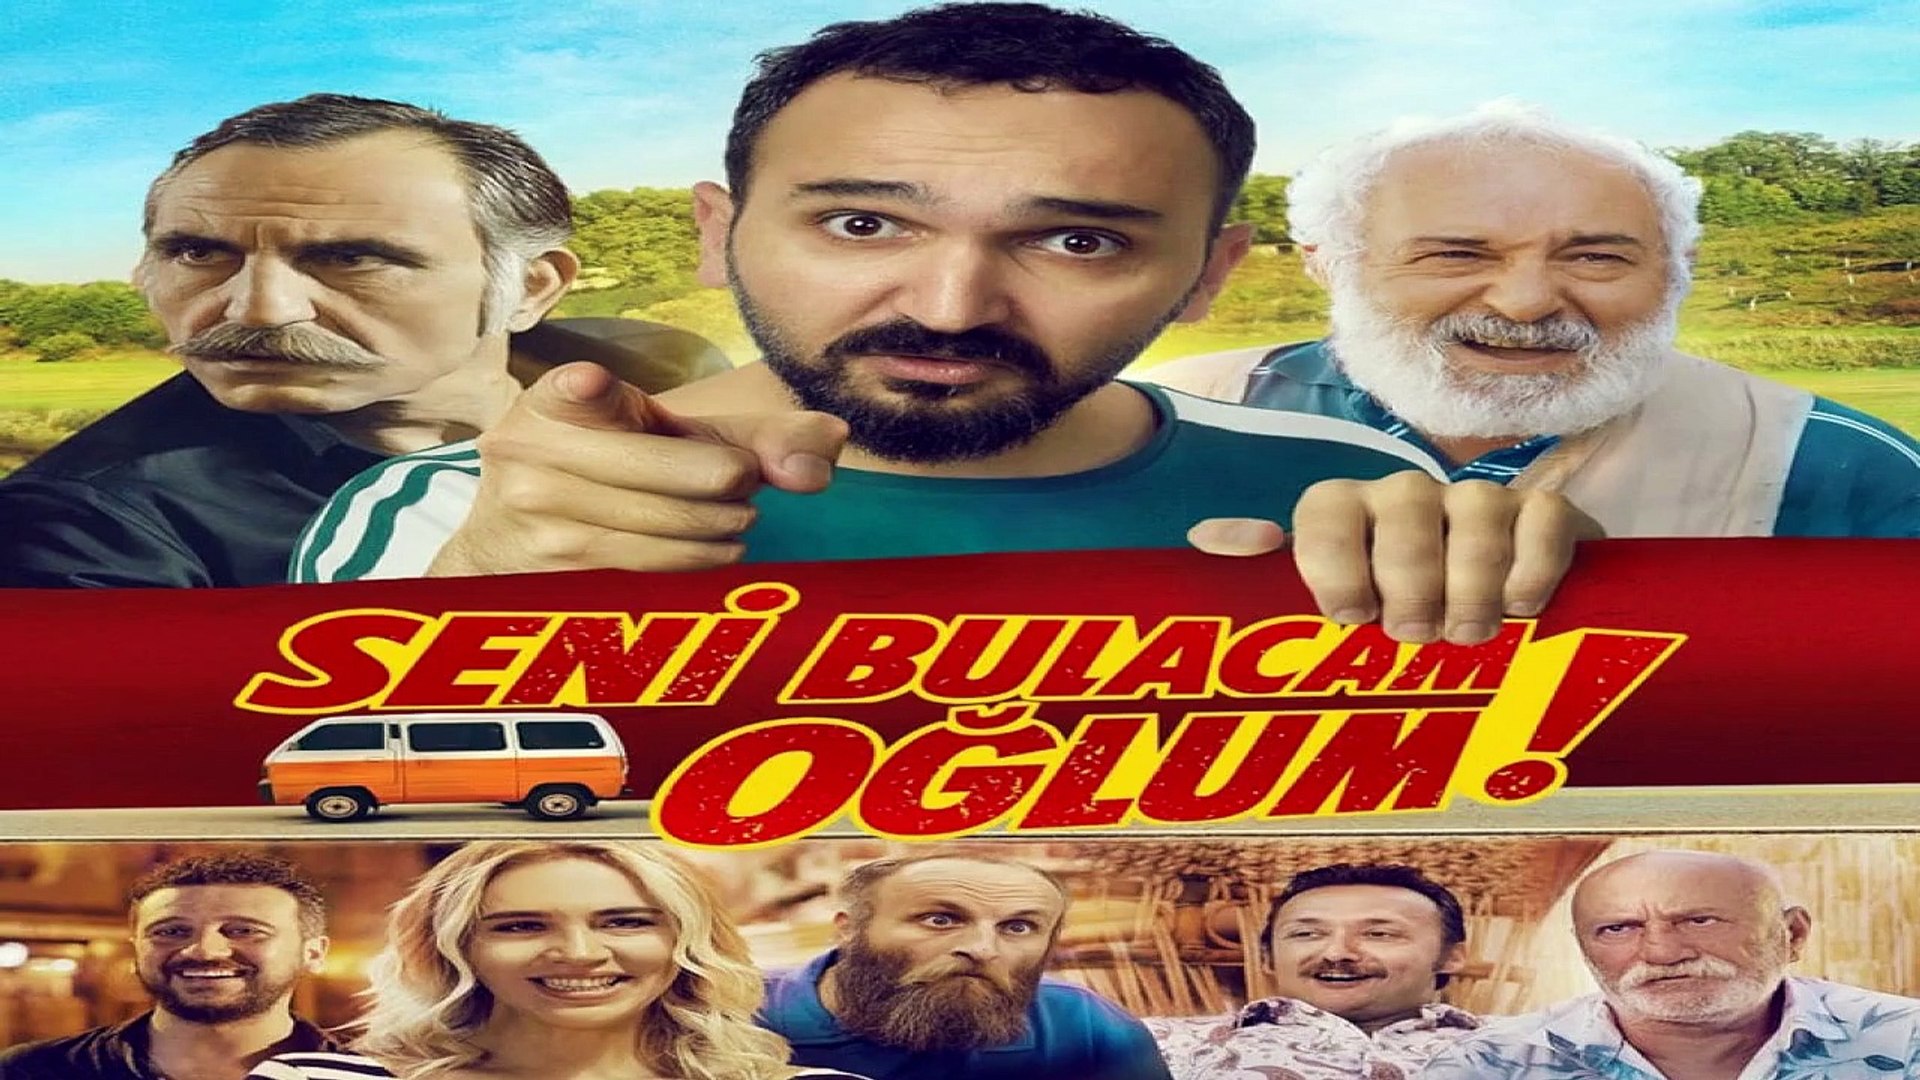 Seni Bulacam Oğlum # Türk Filmi # Komedi # Part 1 # İzle - Dailymotion Video